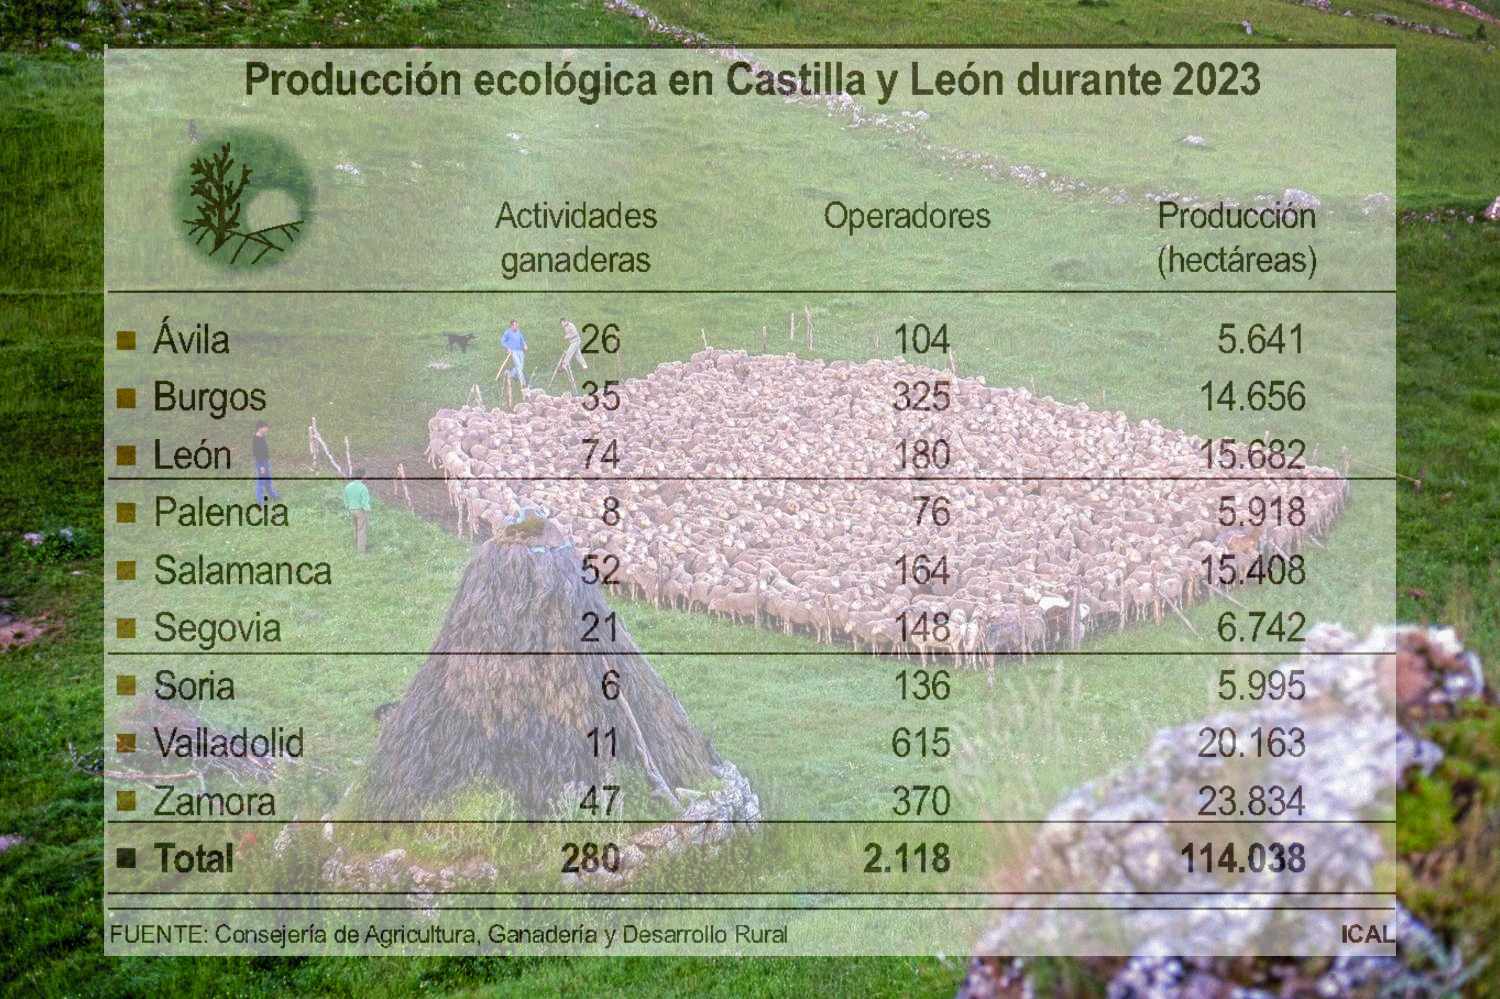 León, la provincia líder de CyL en producción ganadera ecológica 